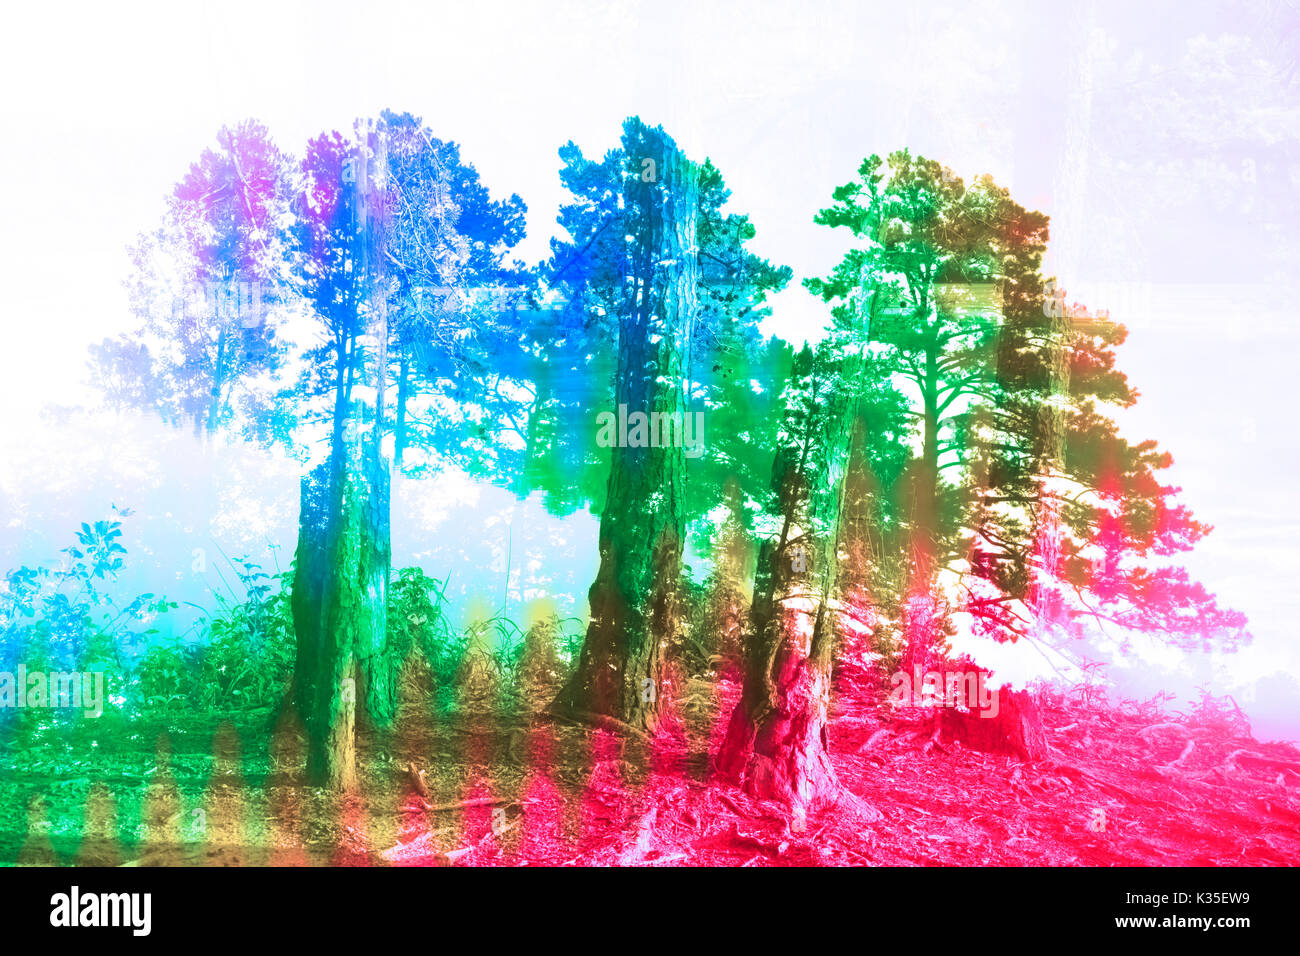 Eine bunte Abstrakt Hintergrund Bild von einem Nadelwald. Stockfoto